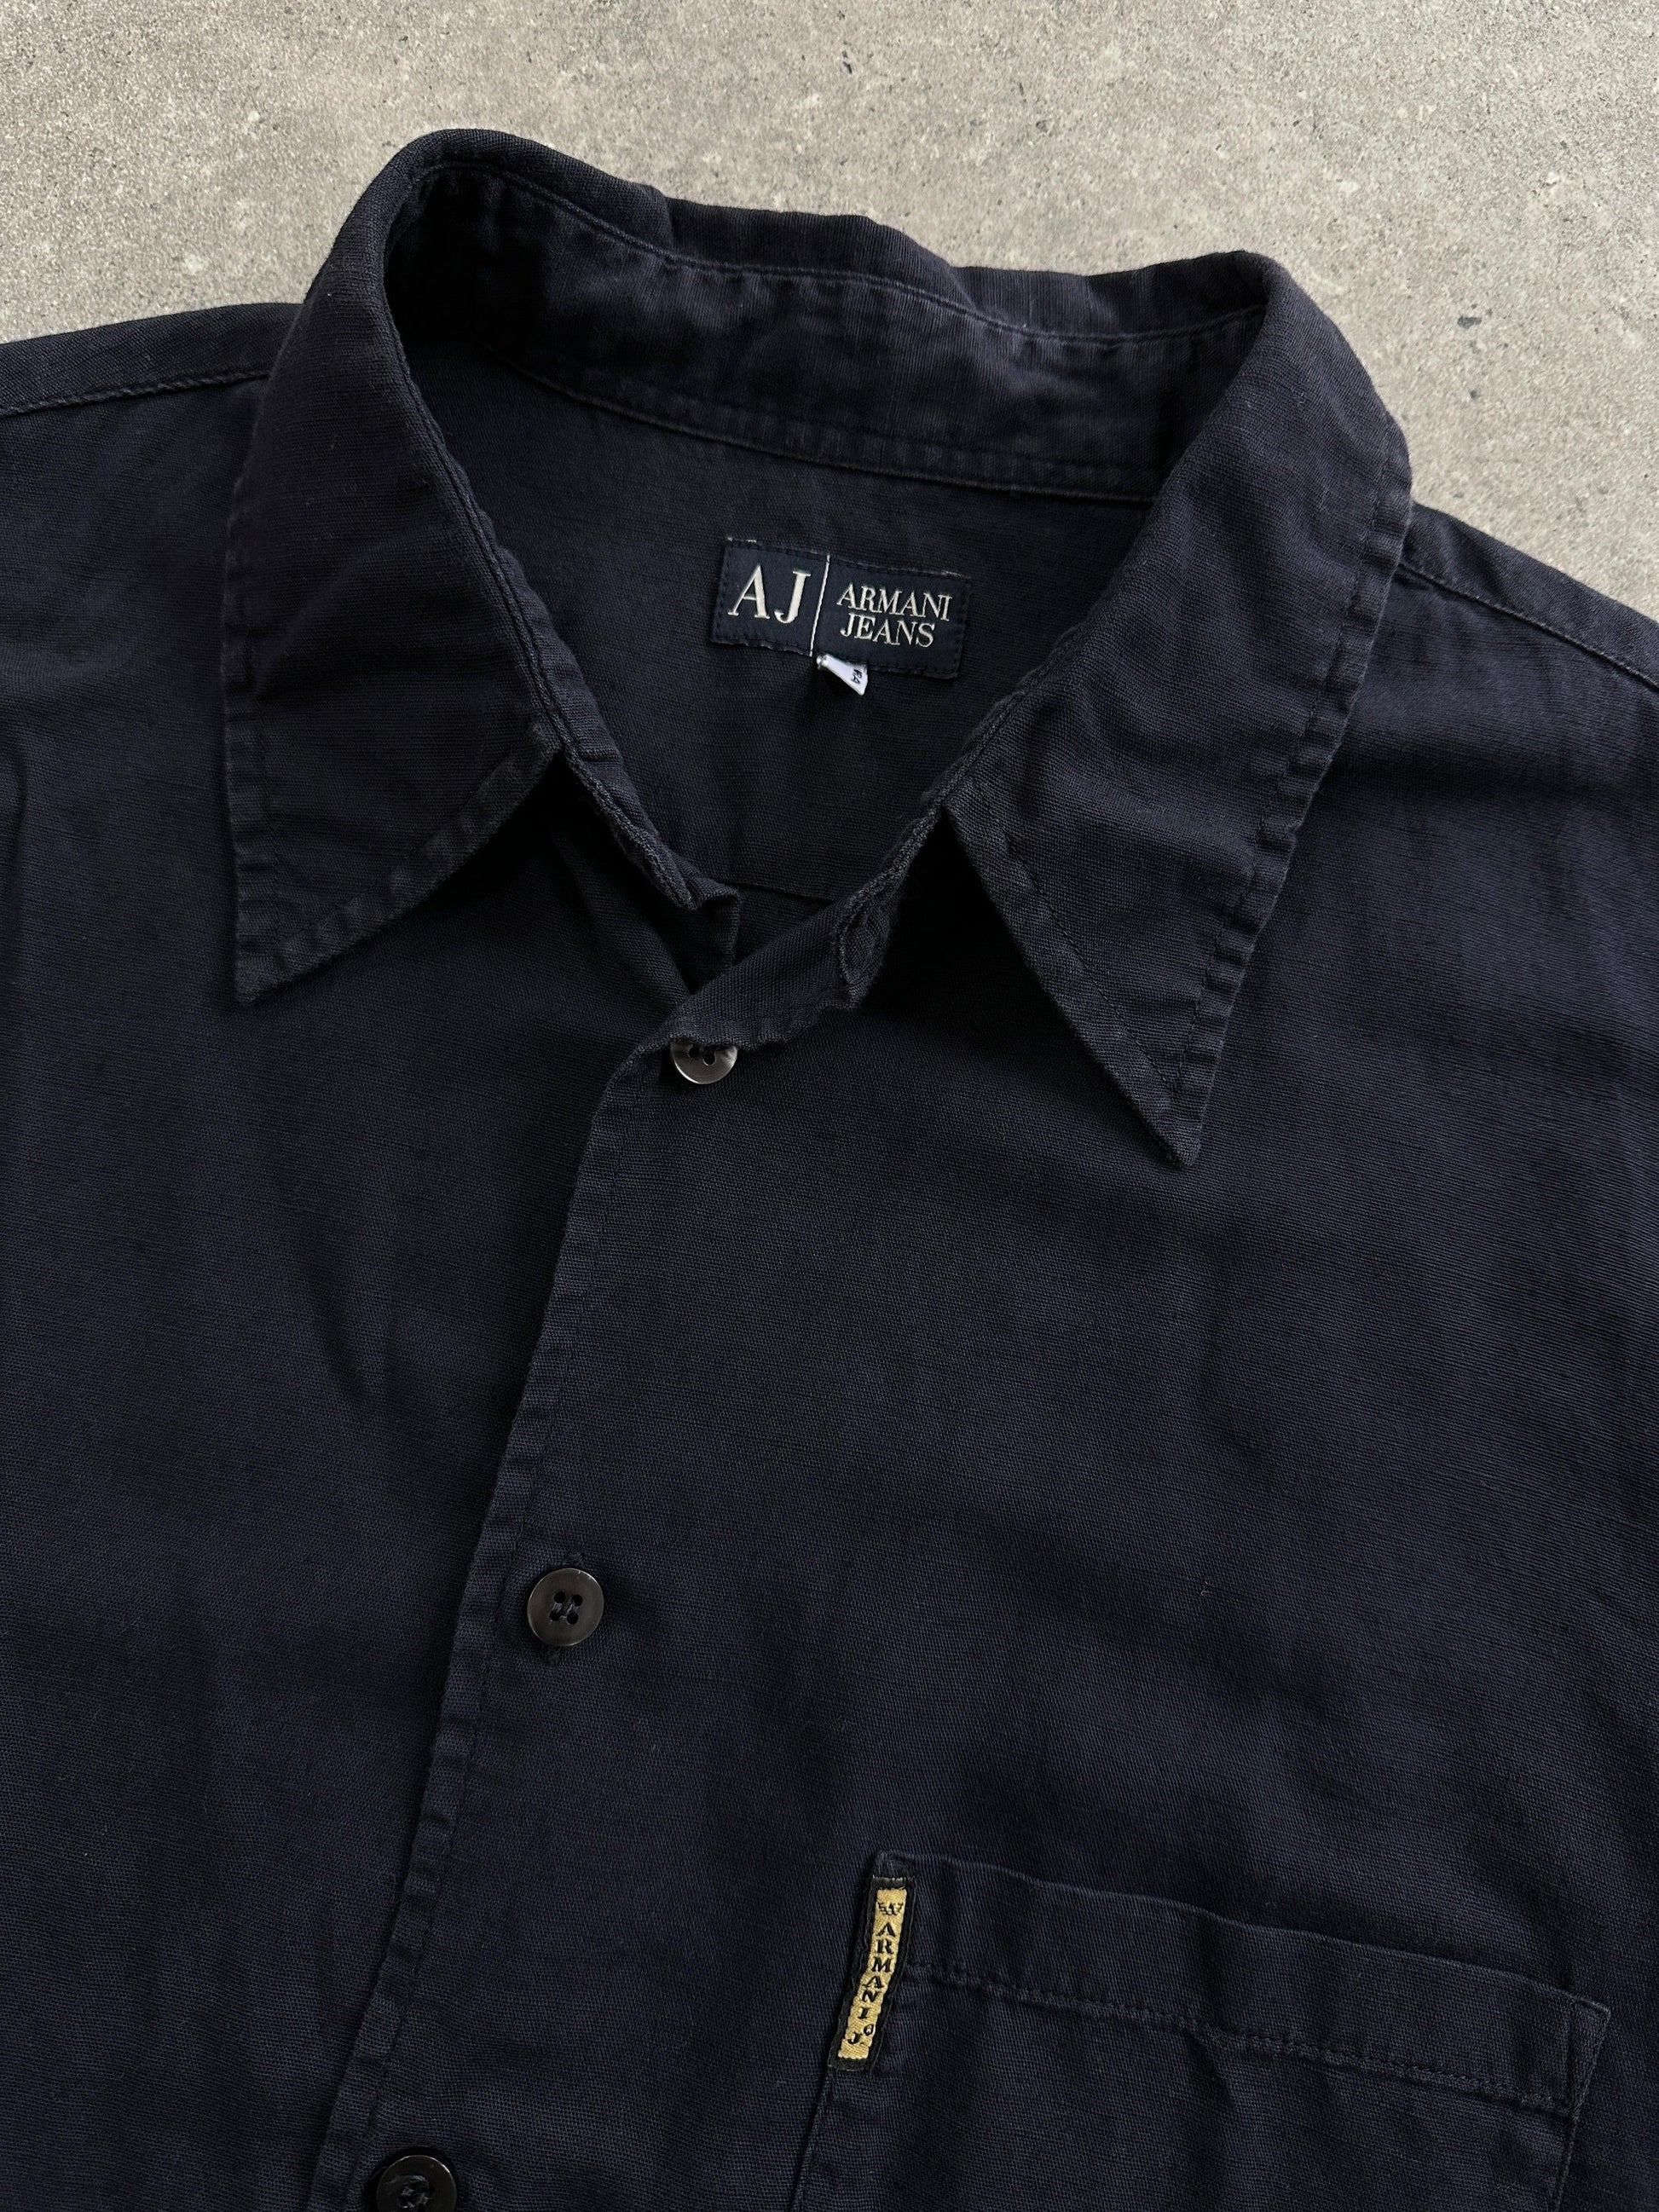 Armani Jeans Cotton Linen Logo Short Sleeve Shirt - L - Known Source